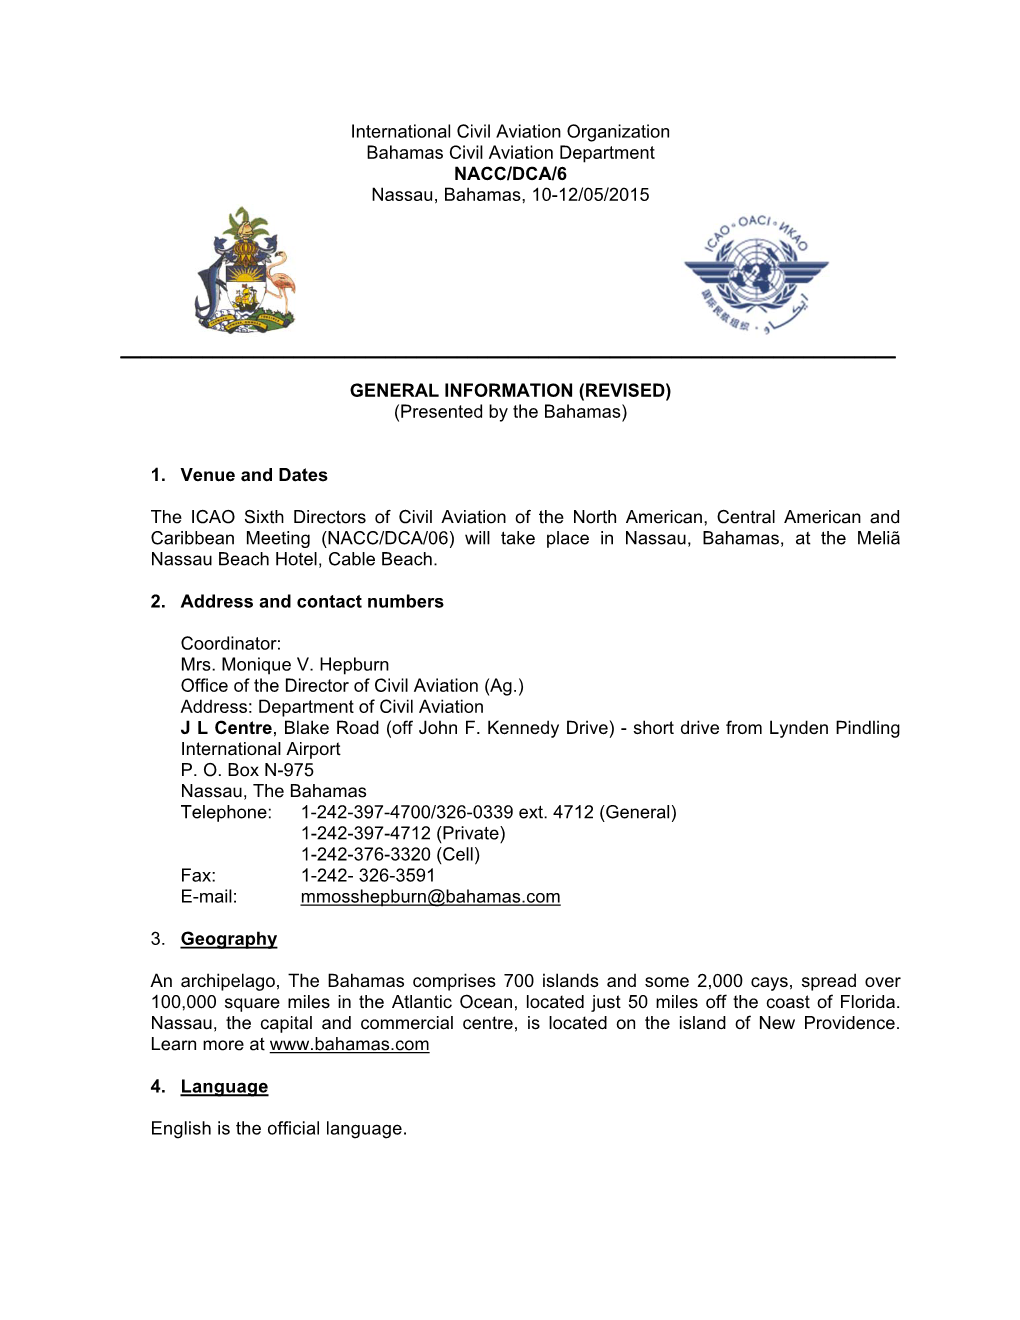 International Civil Aviation Organization Bahamas Civil Aviation Department NACC/DCA/6 Nassau, Bahamas, 10-12/05/2015